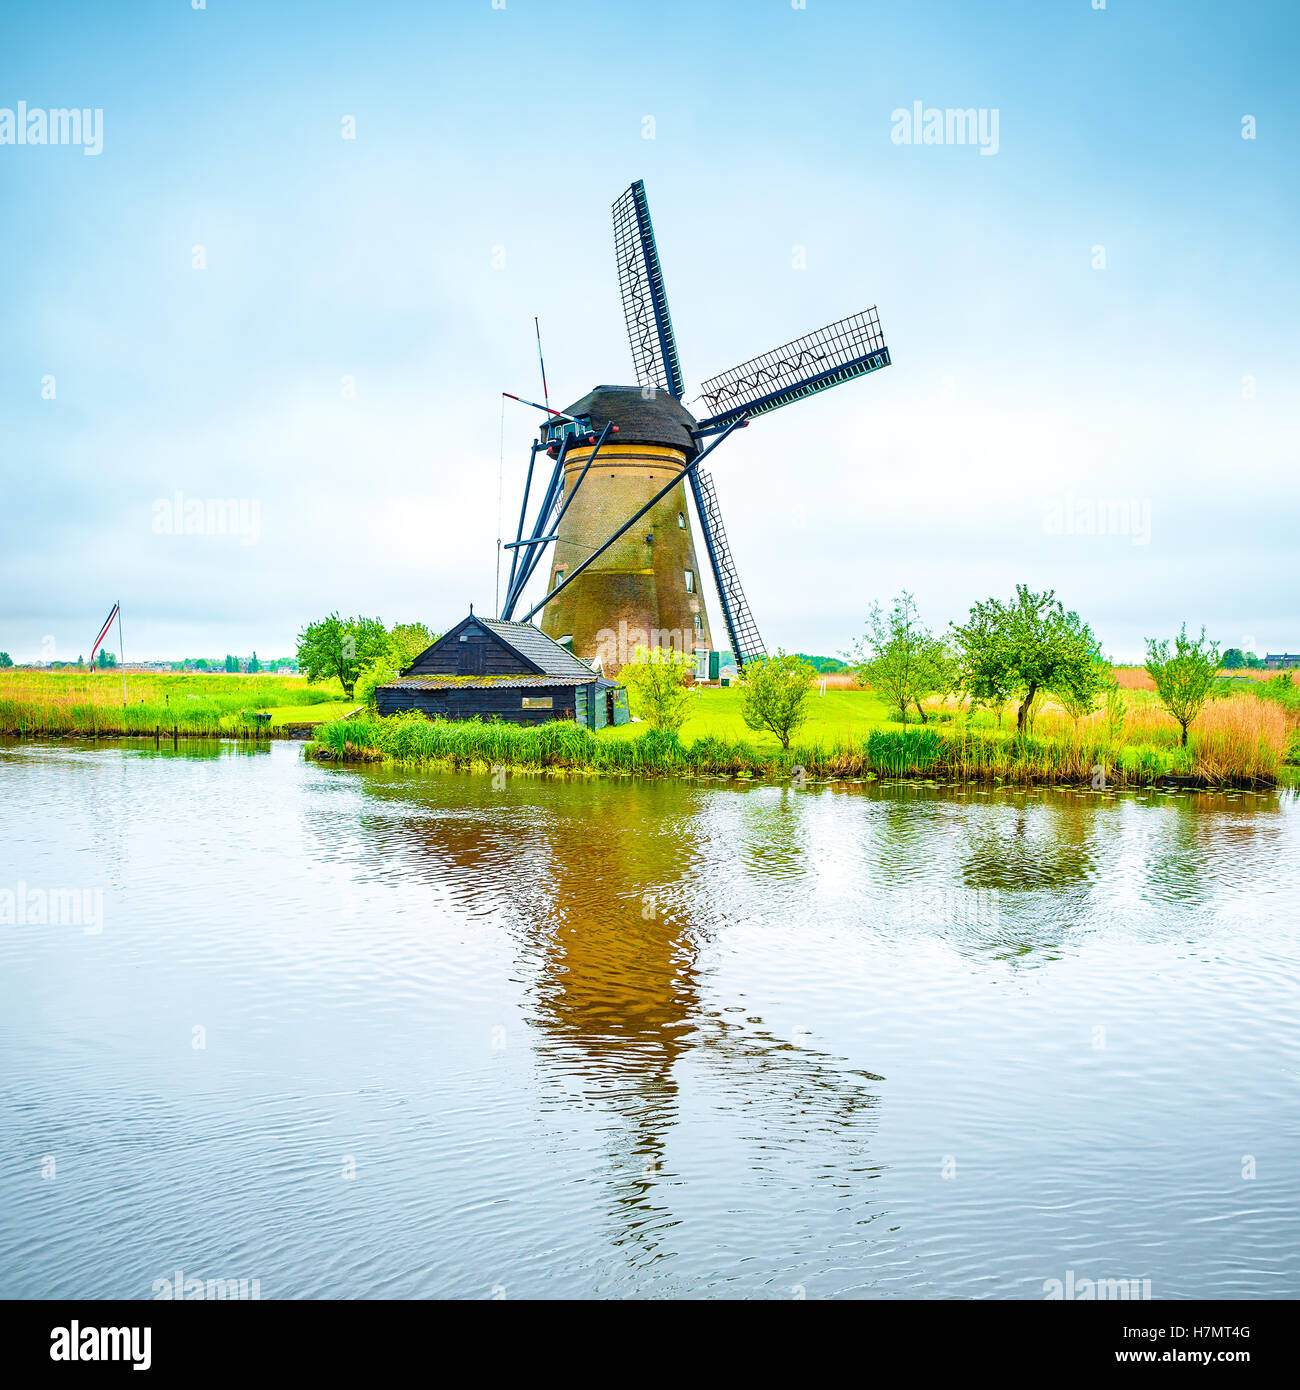 Moulin et de l'eau reflet du canal à Kinderdijk, en Hollande ou aux Pays-Bas. Unesco world heritage site. L'Europe. Banque D'Images